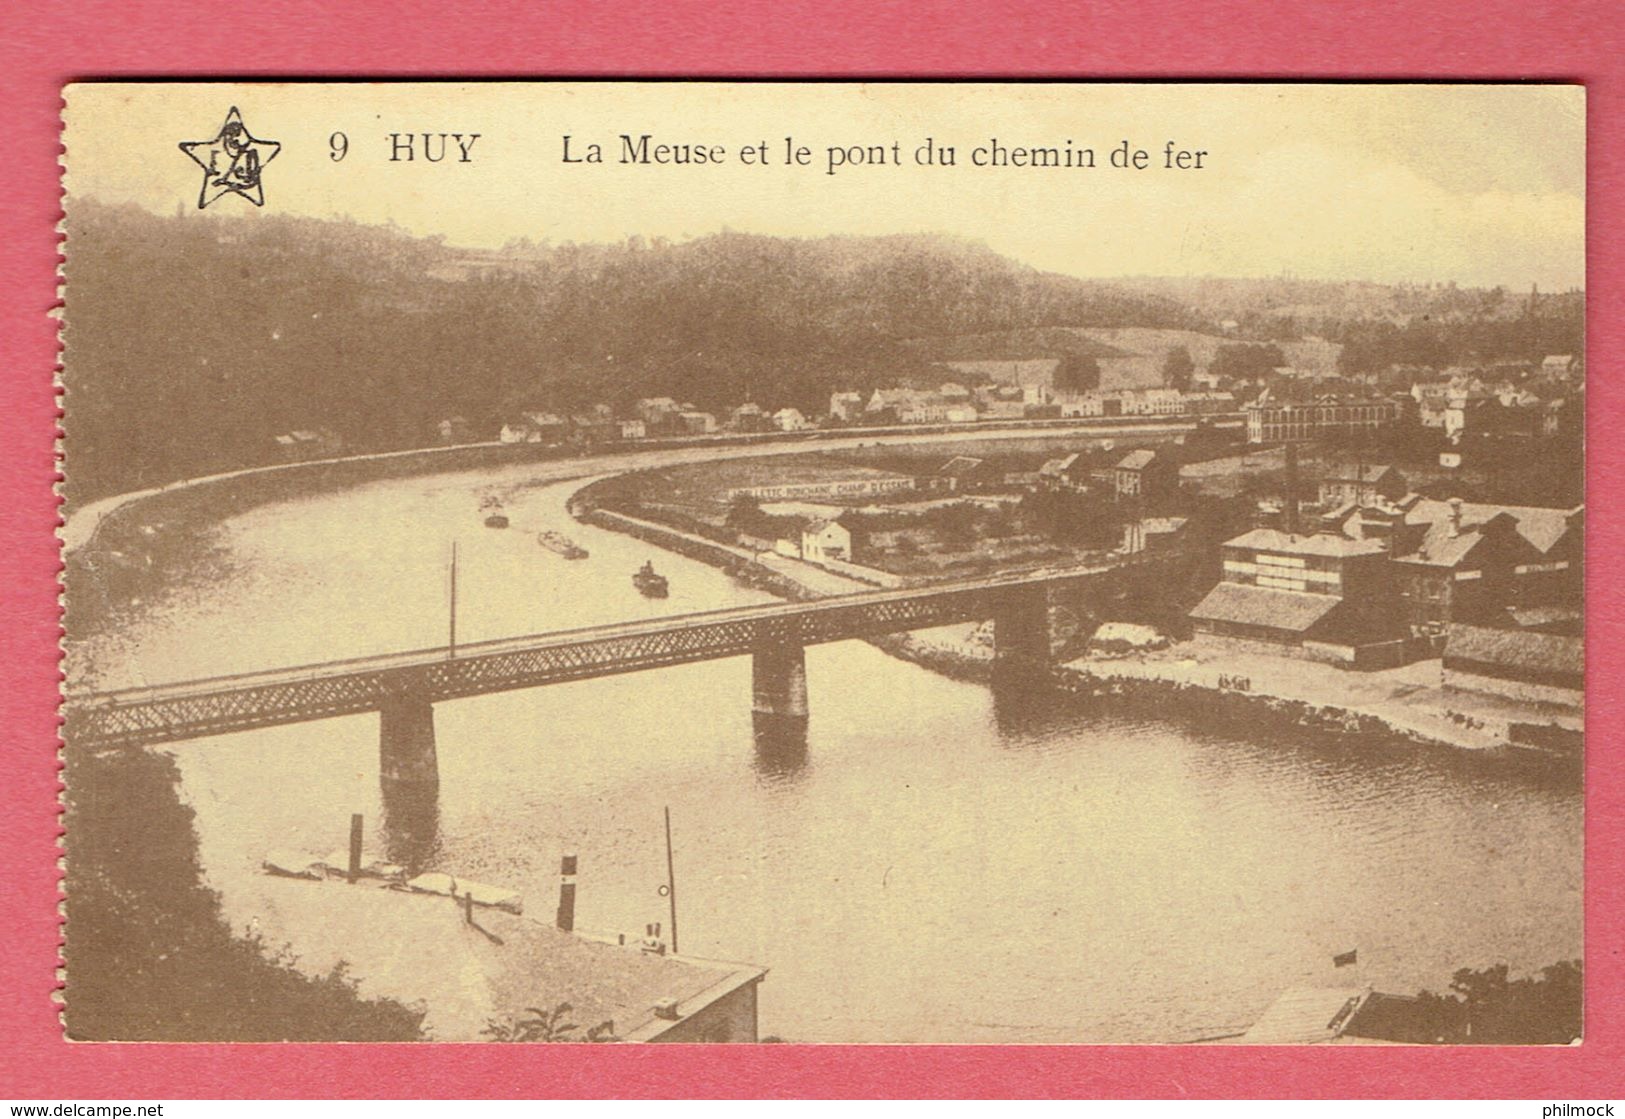 Huy N°9 - La Meuse Et Le Pont Du Chemin De Fer 11-2-1916 - Coll Star - Edit J.vander Elts A Huy - Hoei